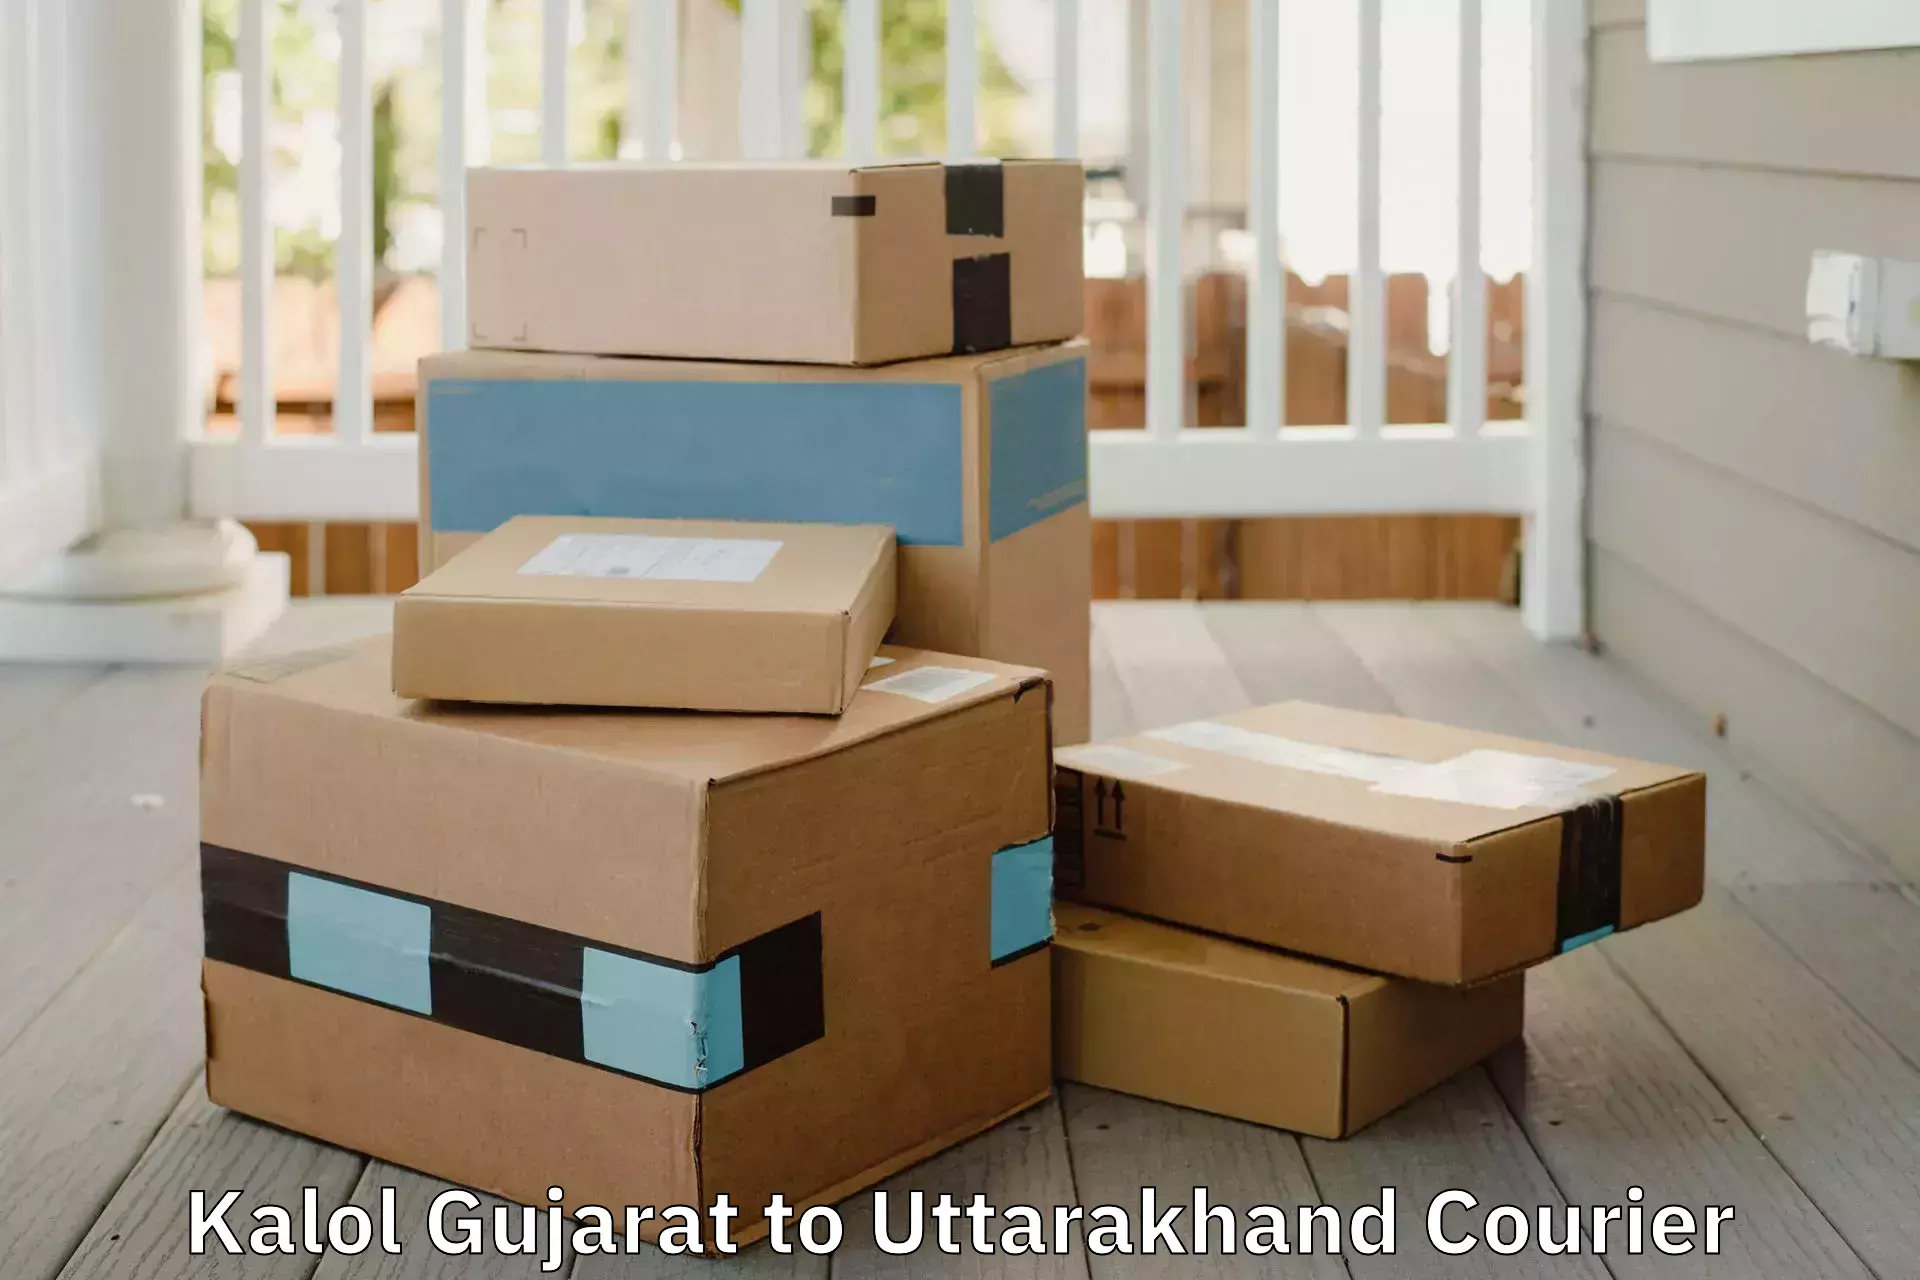 Professional moving company in Kalol Gujarat to Nainital